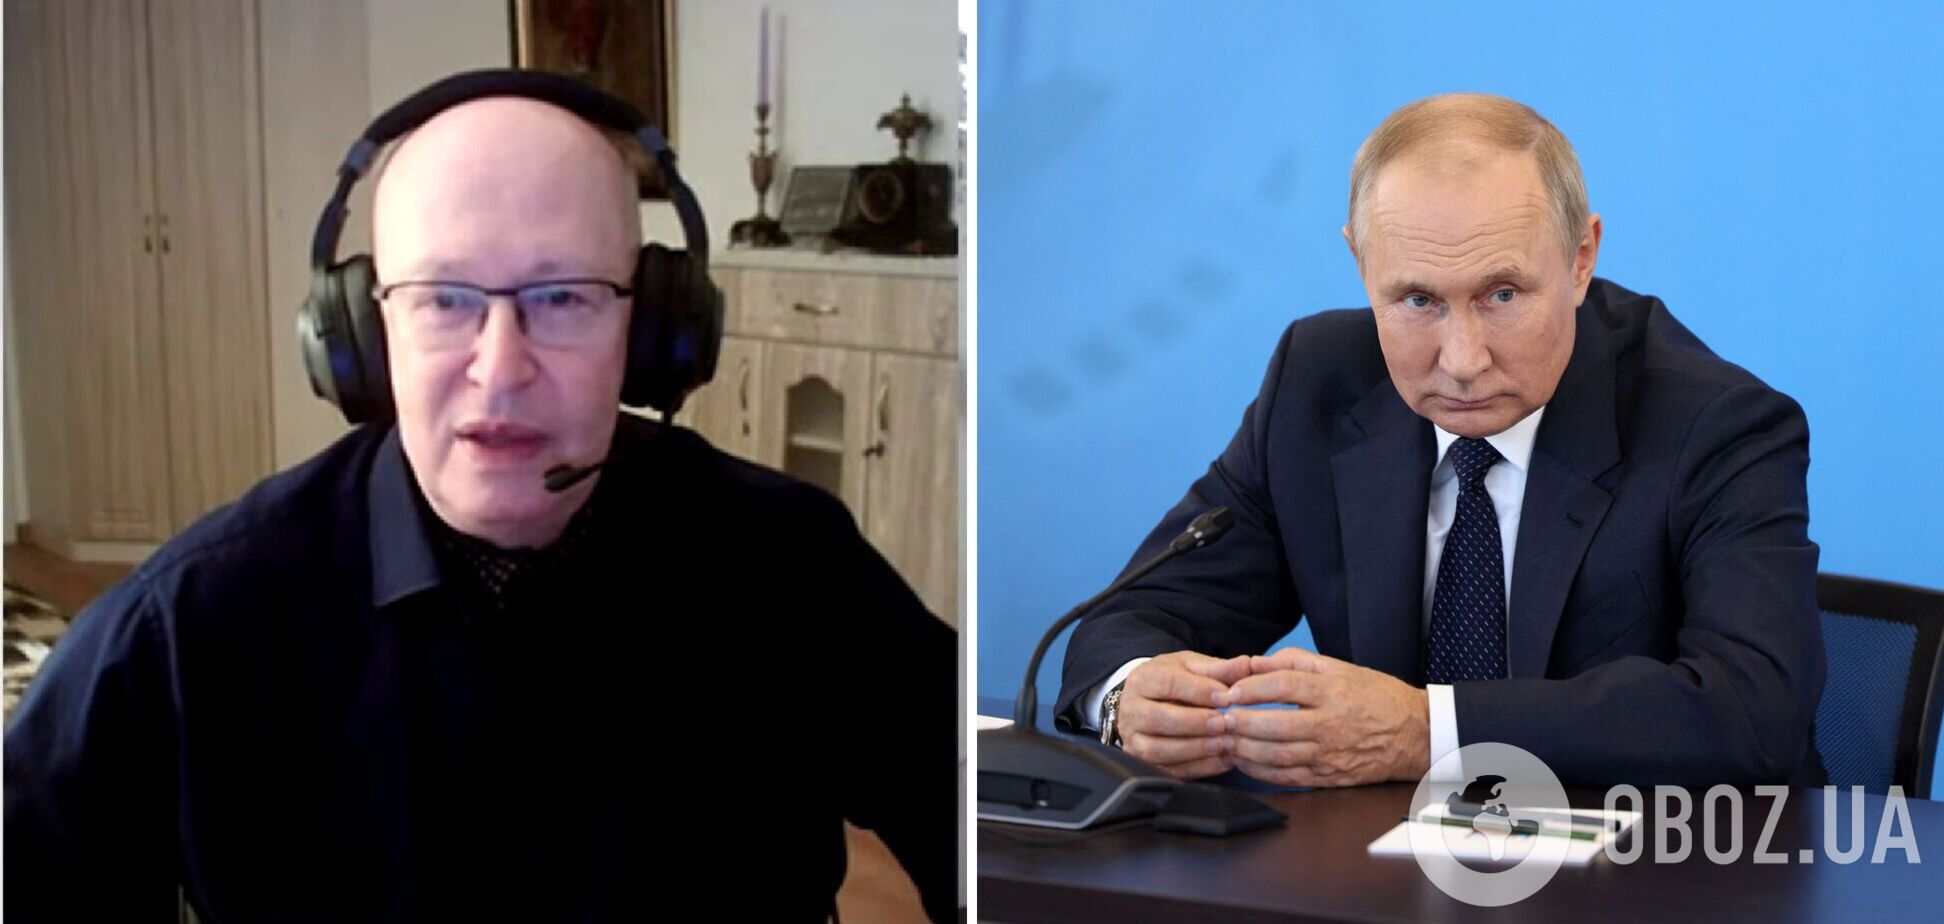 Соловей заявил, что Путин подписал закрытое соглашение с Китаем, и объяснил, чего ждет Пекин. Видео